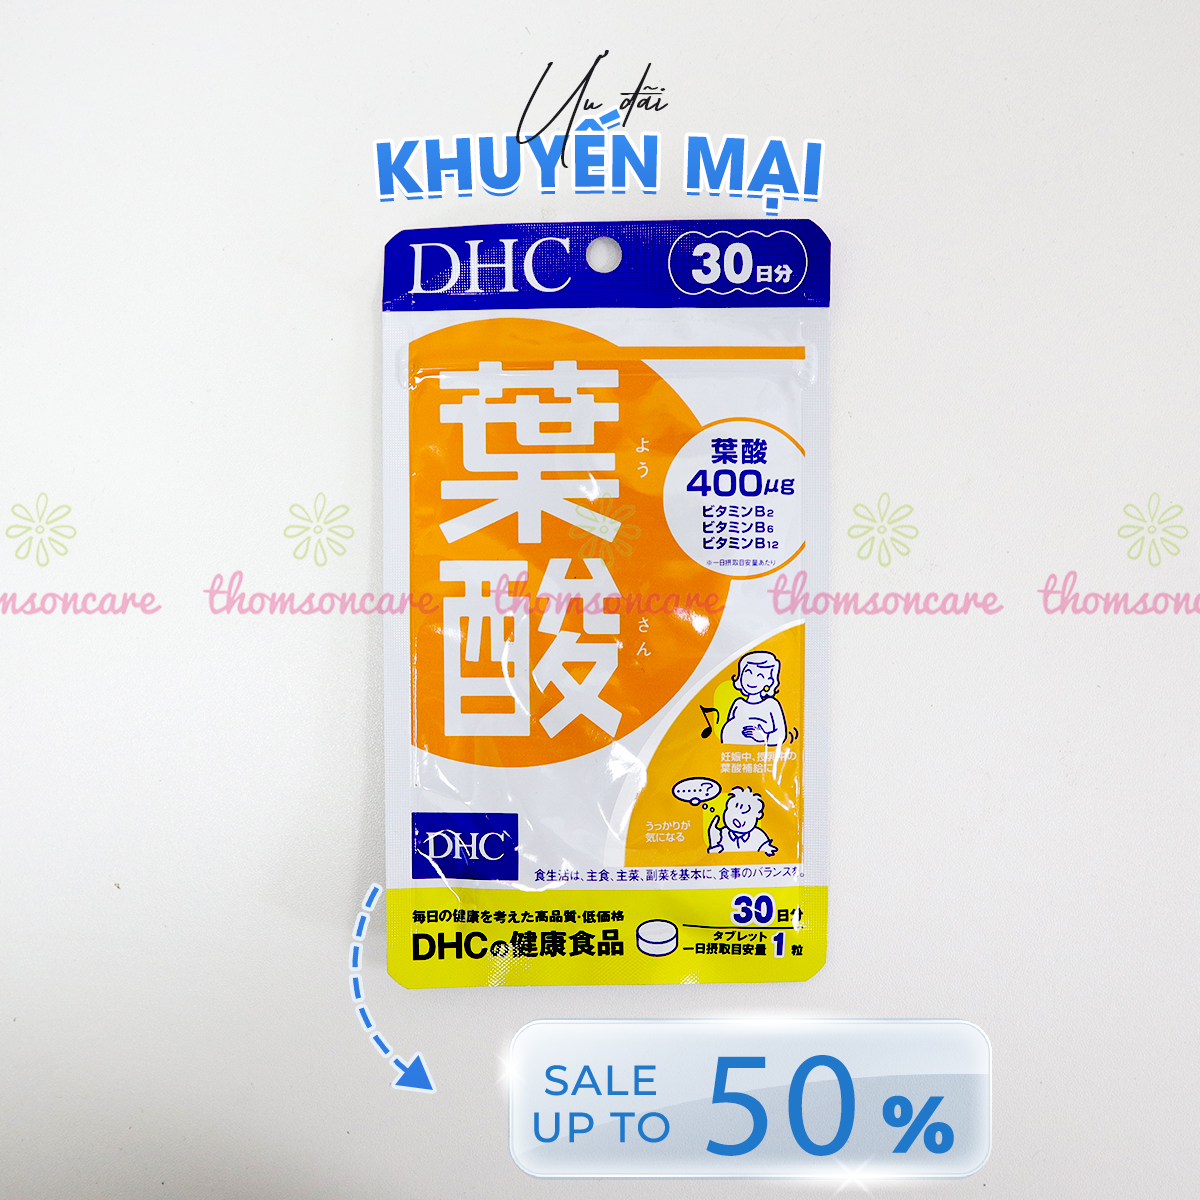 DHC Folic Acid - Bổ sung Vitamin, Axit Folic 400ug 0.4mg cho bà bầu của nhật trước và sau khi sinh - Từ DHC Nhật Bản